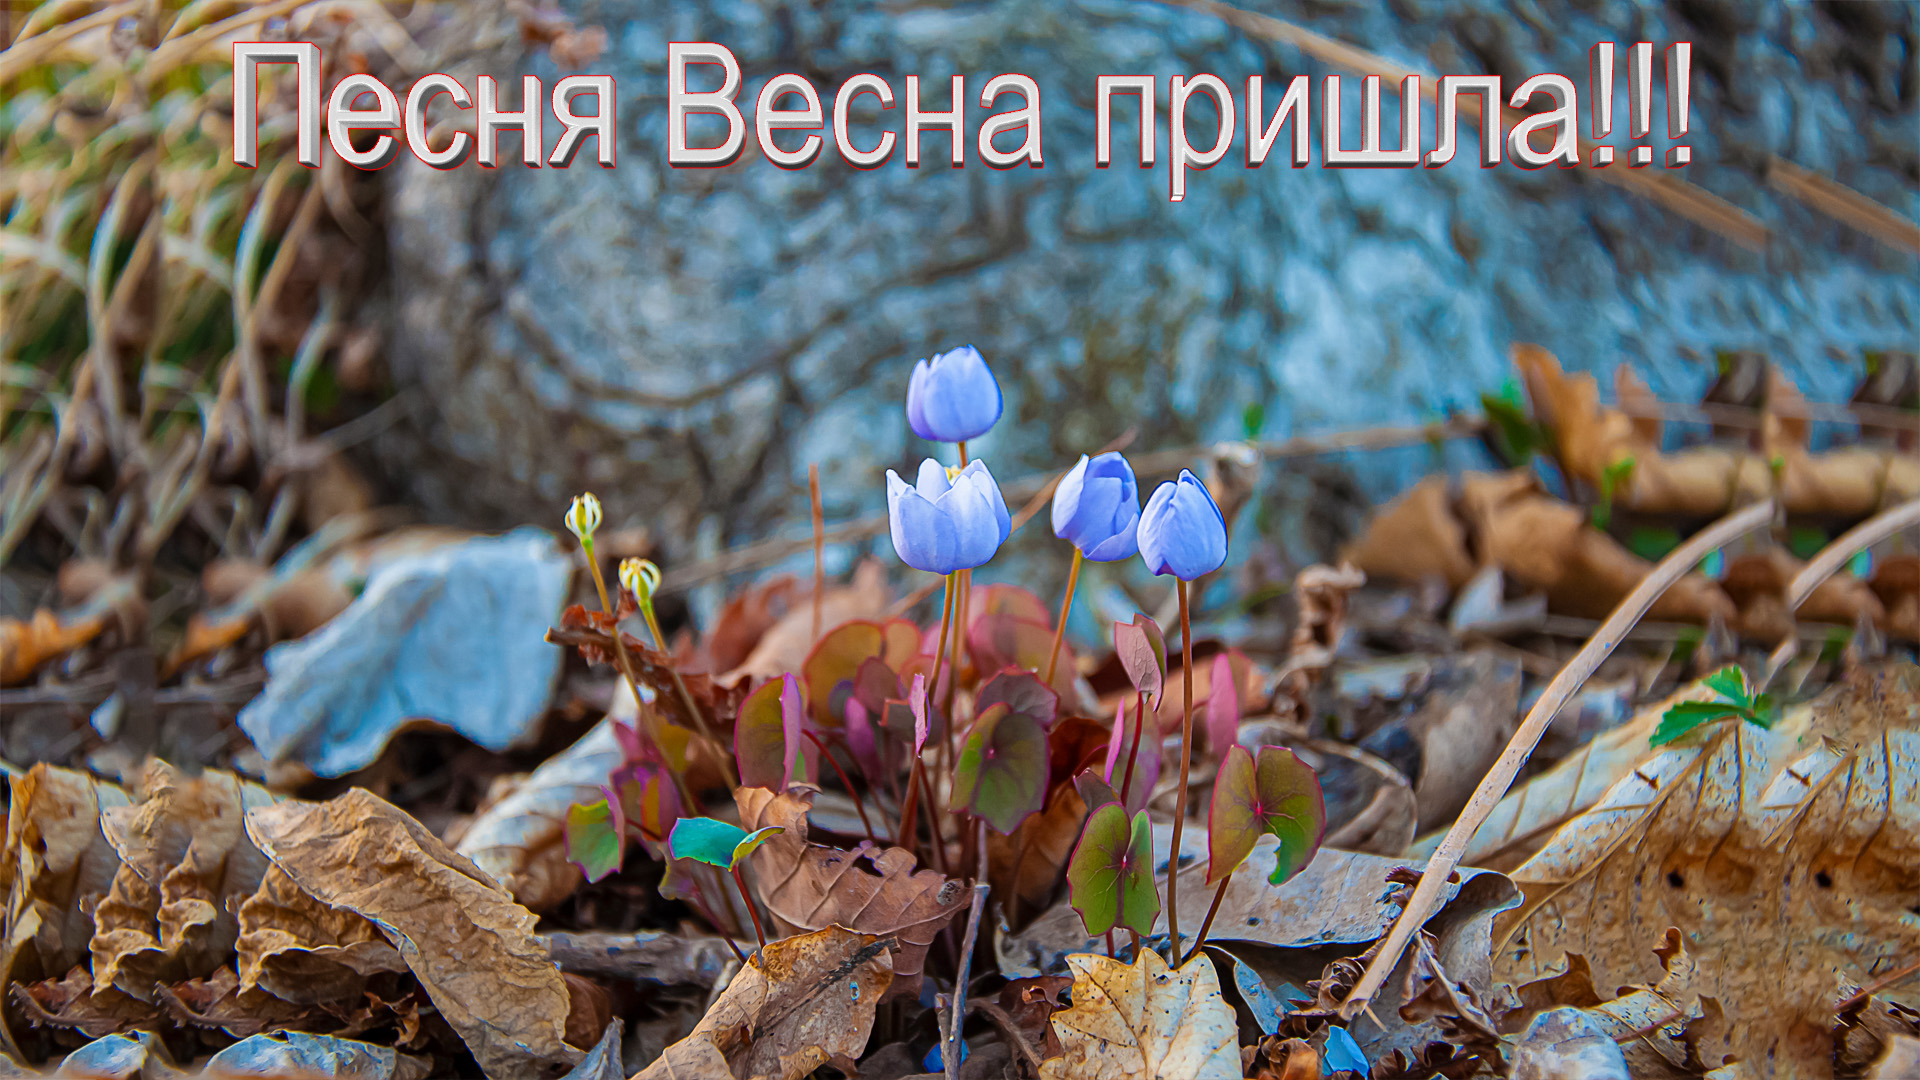 Песни про весну на английском. Природа Приморского края весной. Дожить до весны. Весенняя страница.